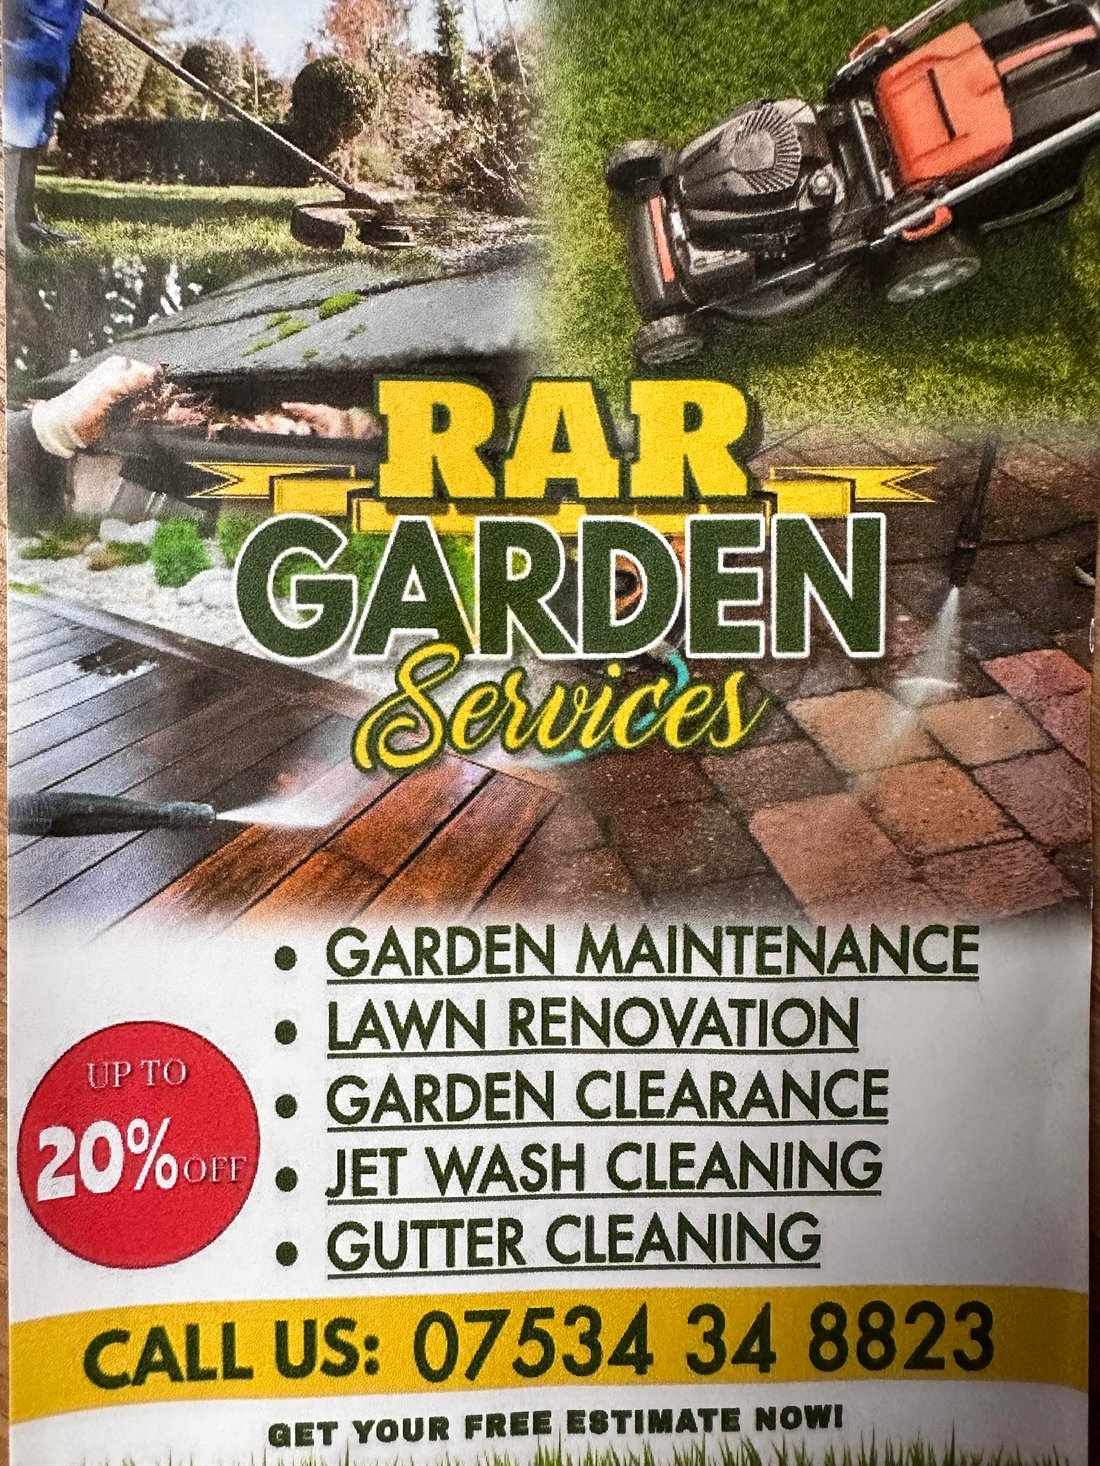 Main header - "Rar Garden Services"